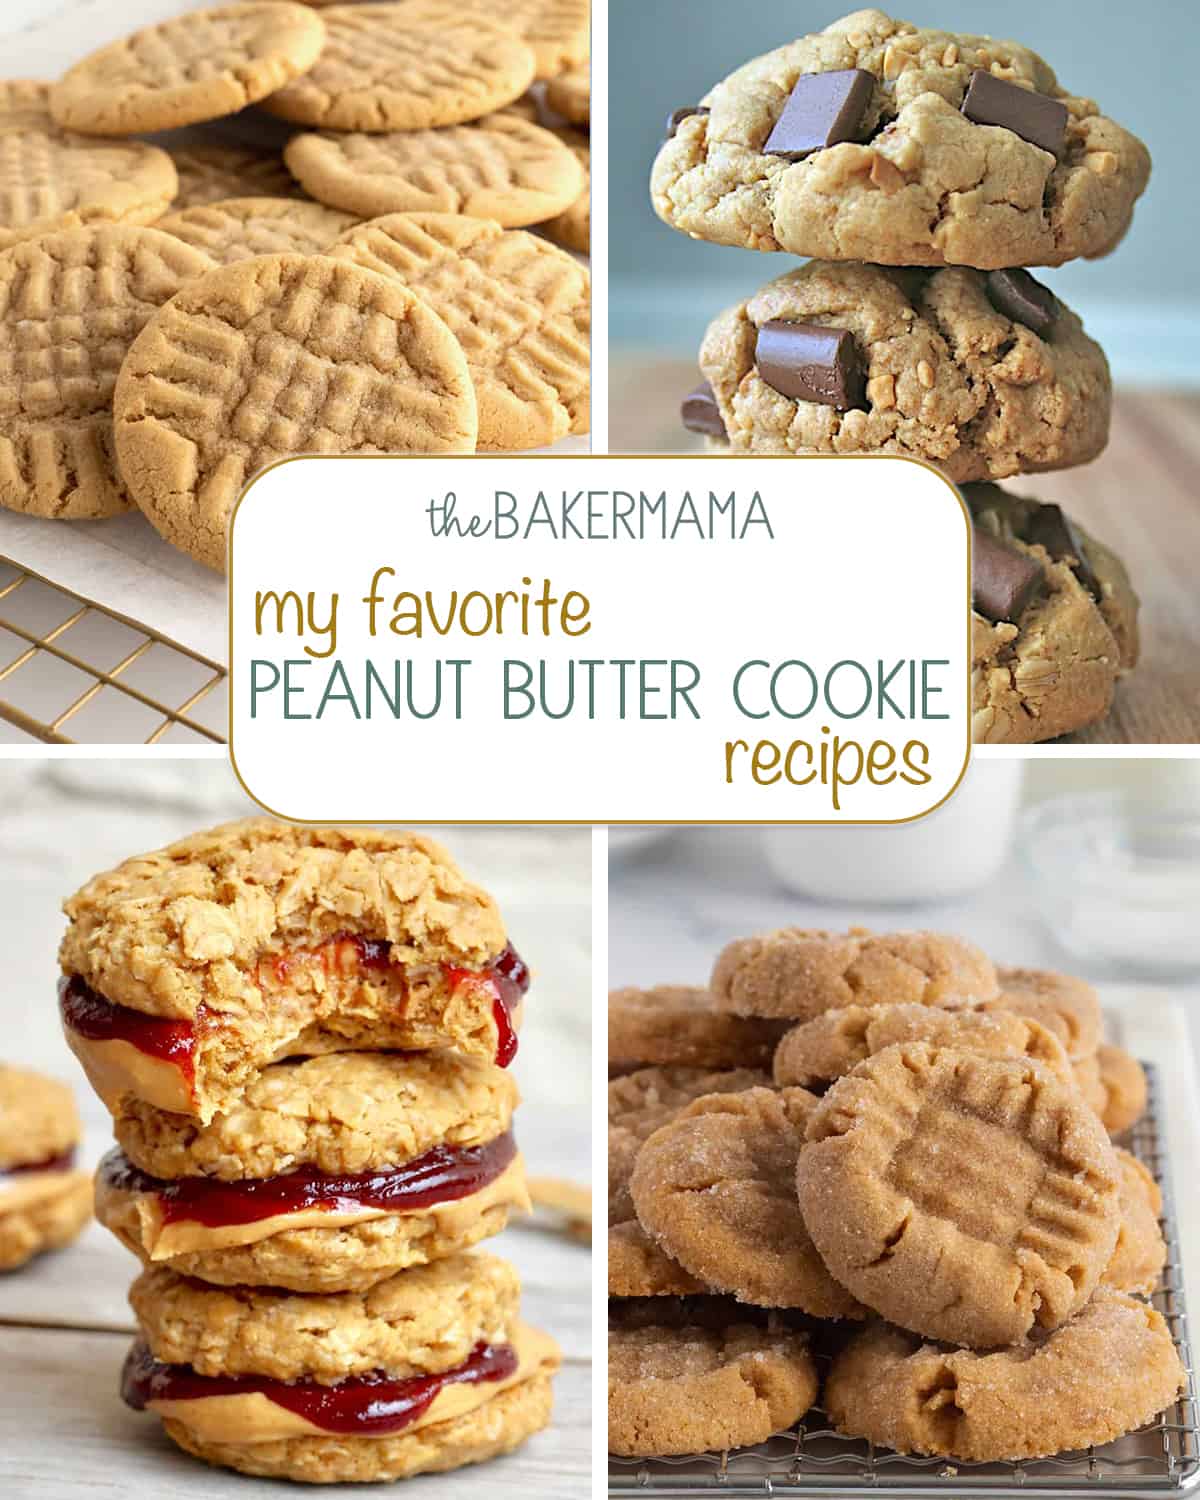 Classic peanut butter cookies, peanut butter chocolate chunk cookies, peanut butter and jelly cookie sandwiches, Healthy Flourless Peanut Butter & Jelly Cookie Sandwiches, and Flourless Peanut Butter Cookies.